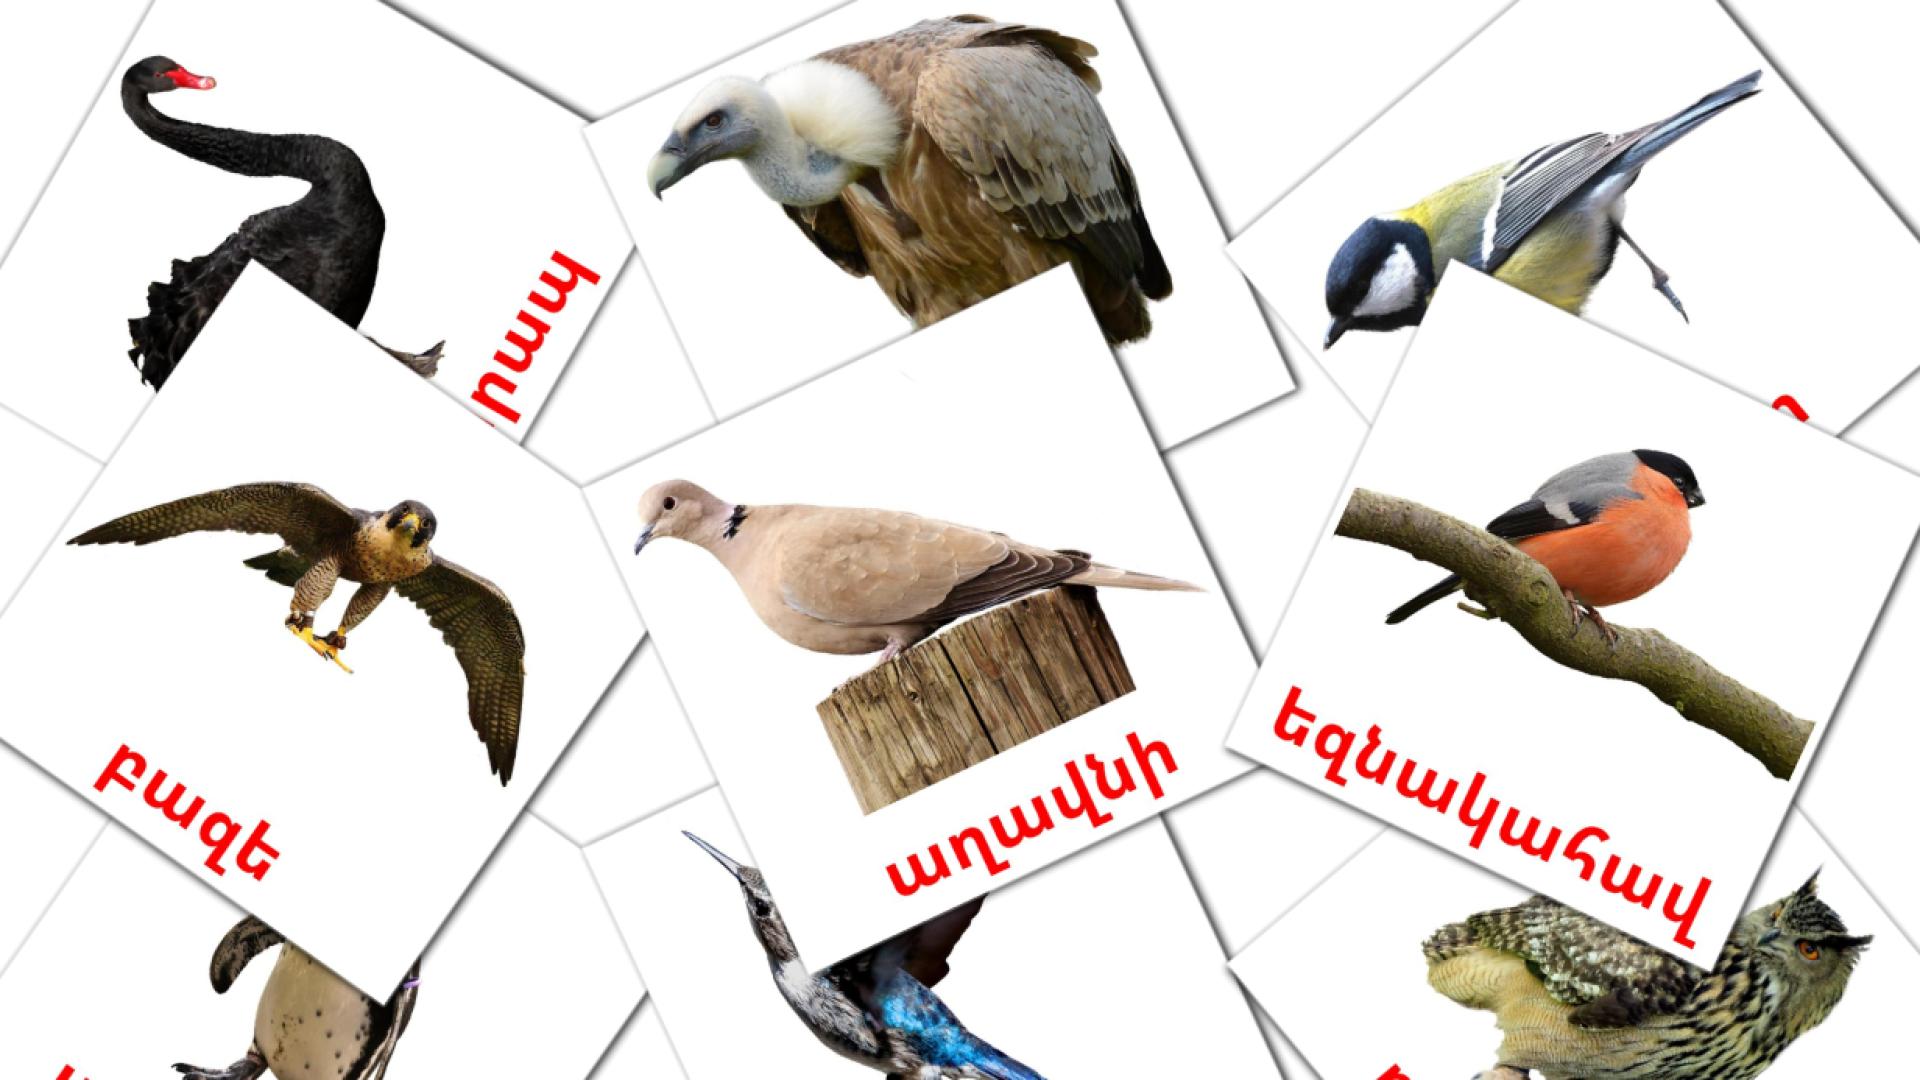 Uccelli selvaggi - Schede di vocabolario armeno